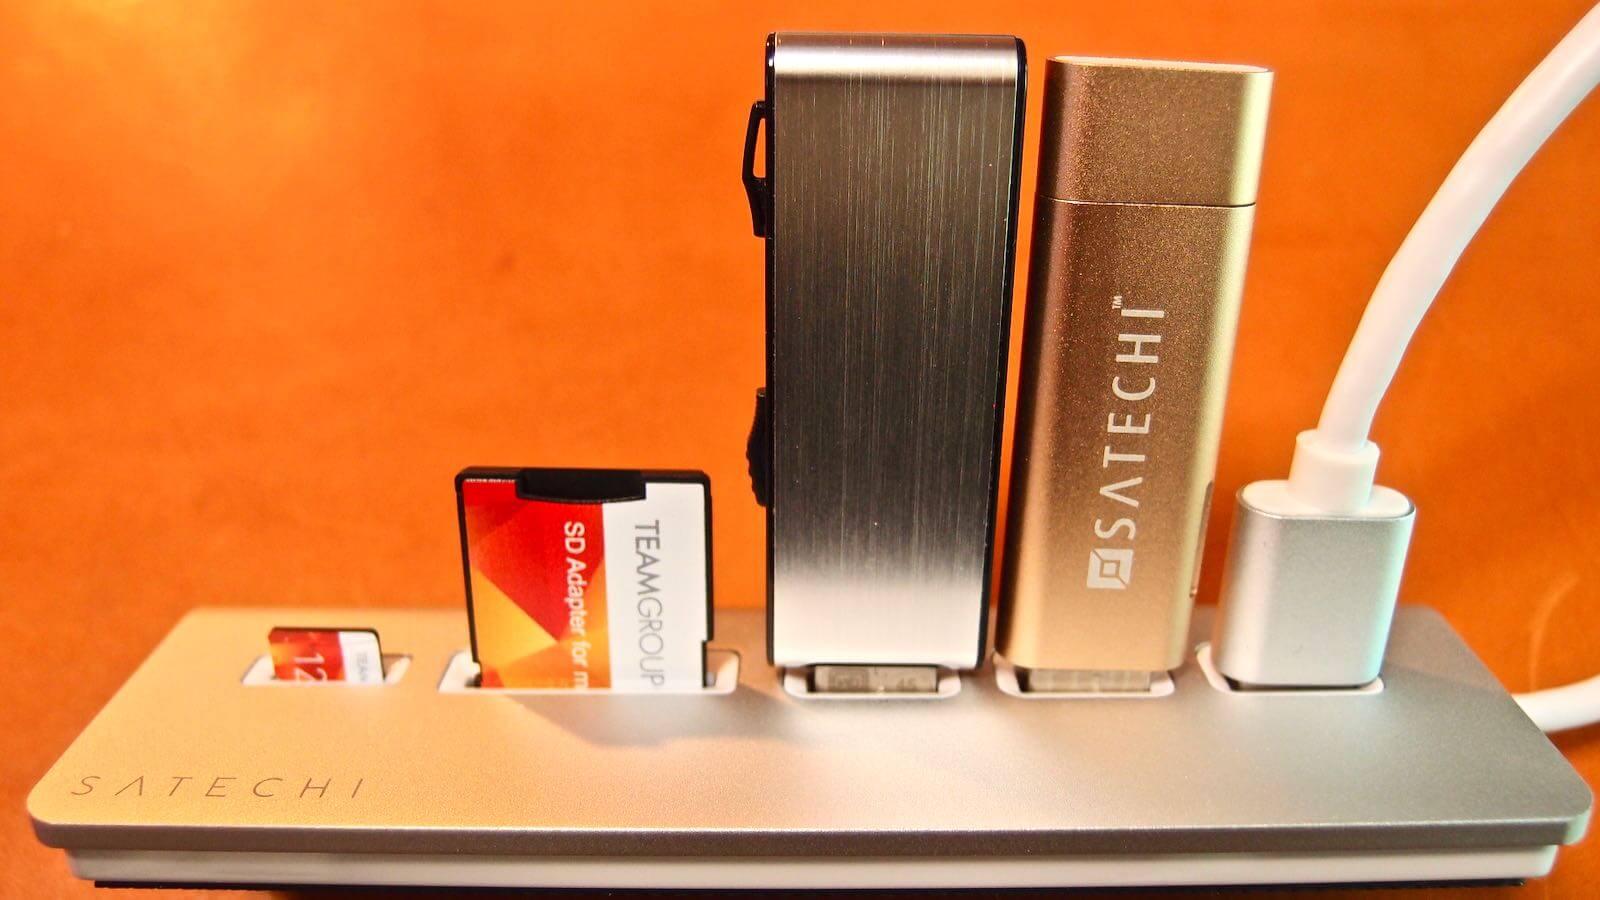 0174 Satechi Aluminum Hub USB 3 0 Card Reader 12